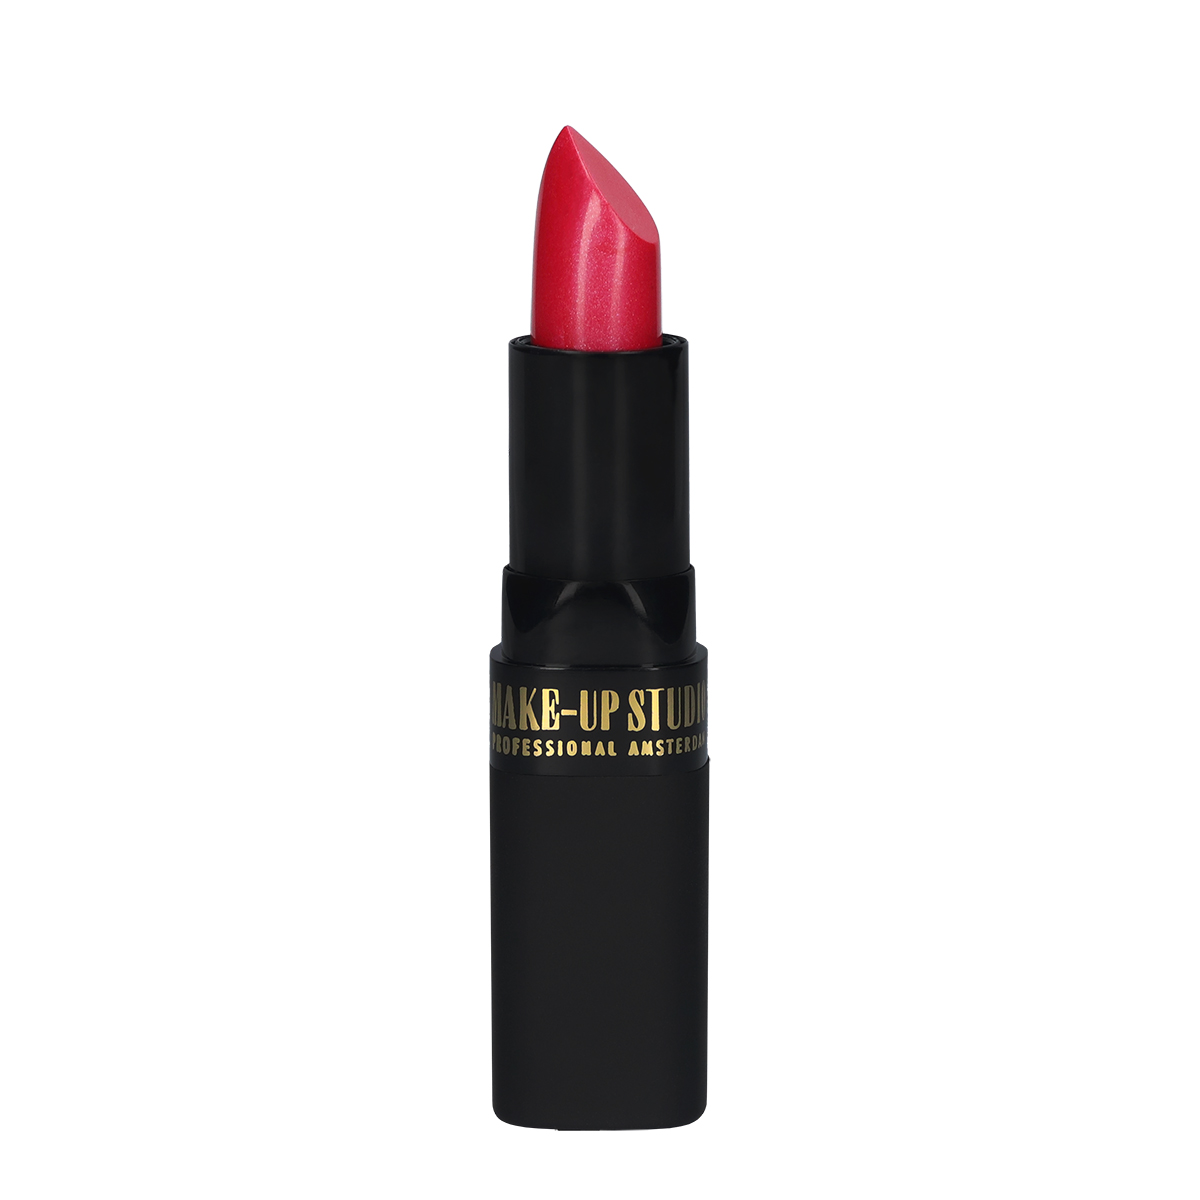 Make-up Studio Lipstick Lippenstift - 39